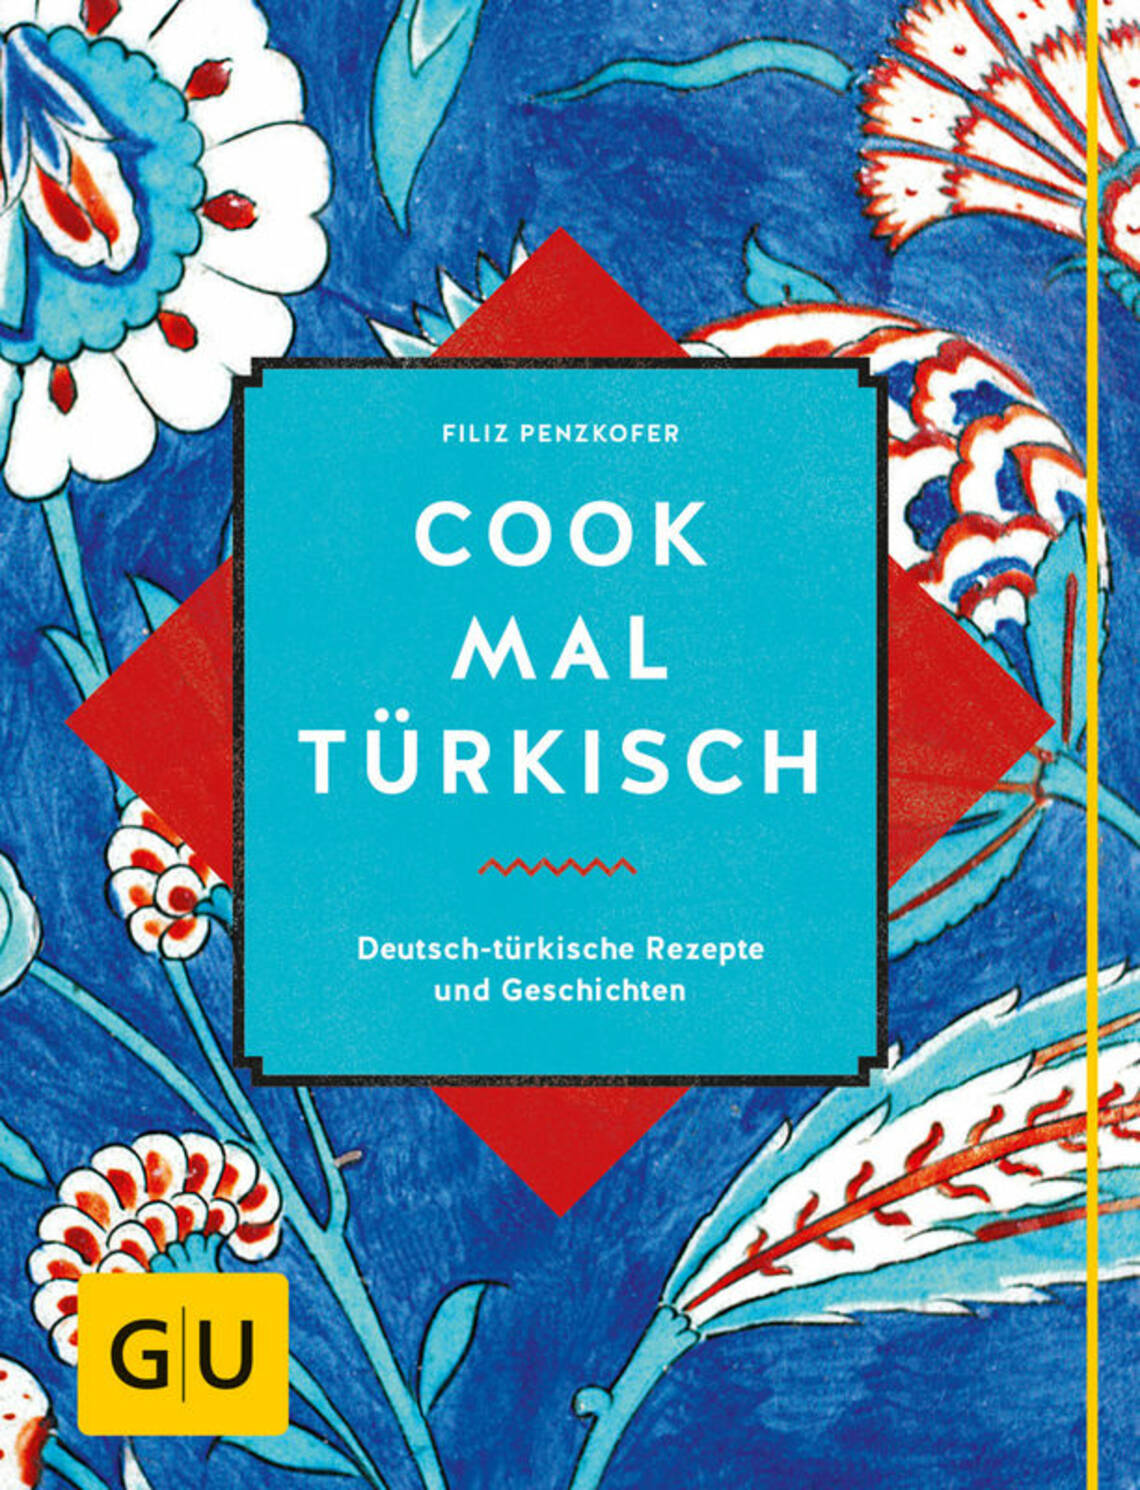 Cook mal türkisch von Filiz Penzkofer